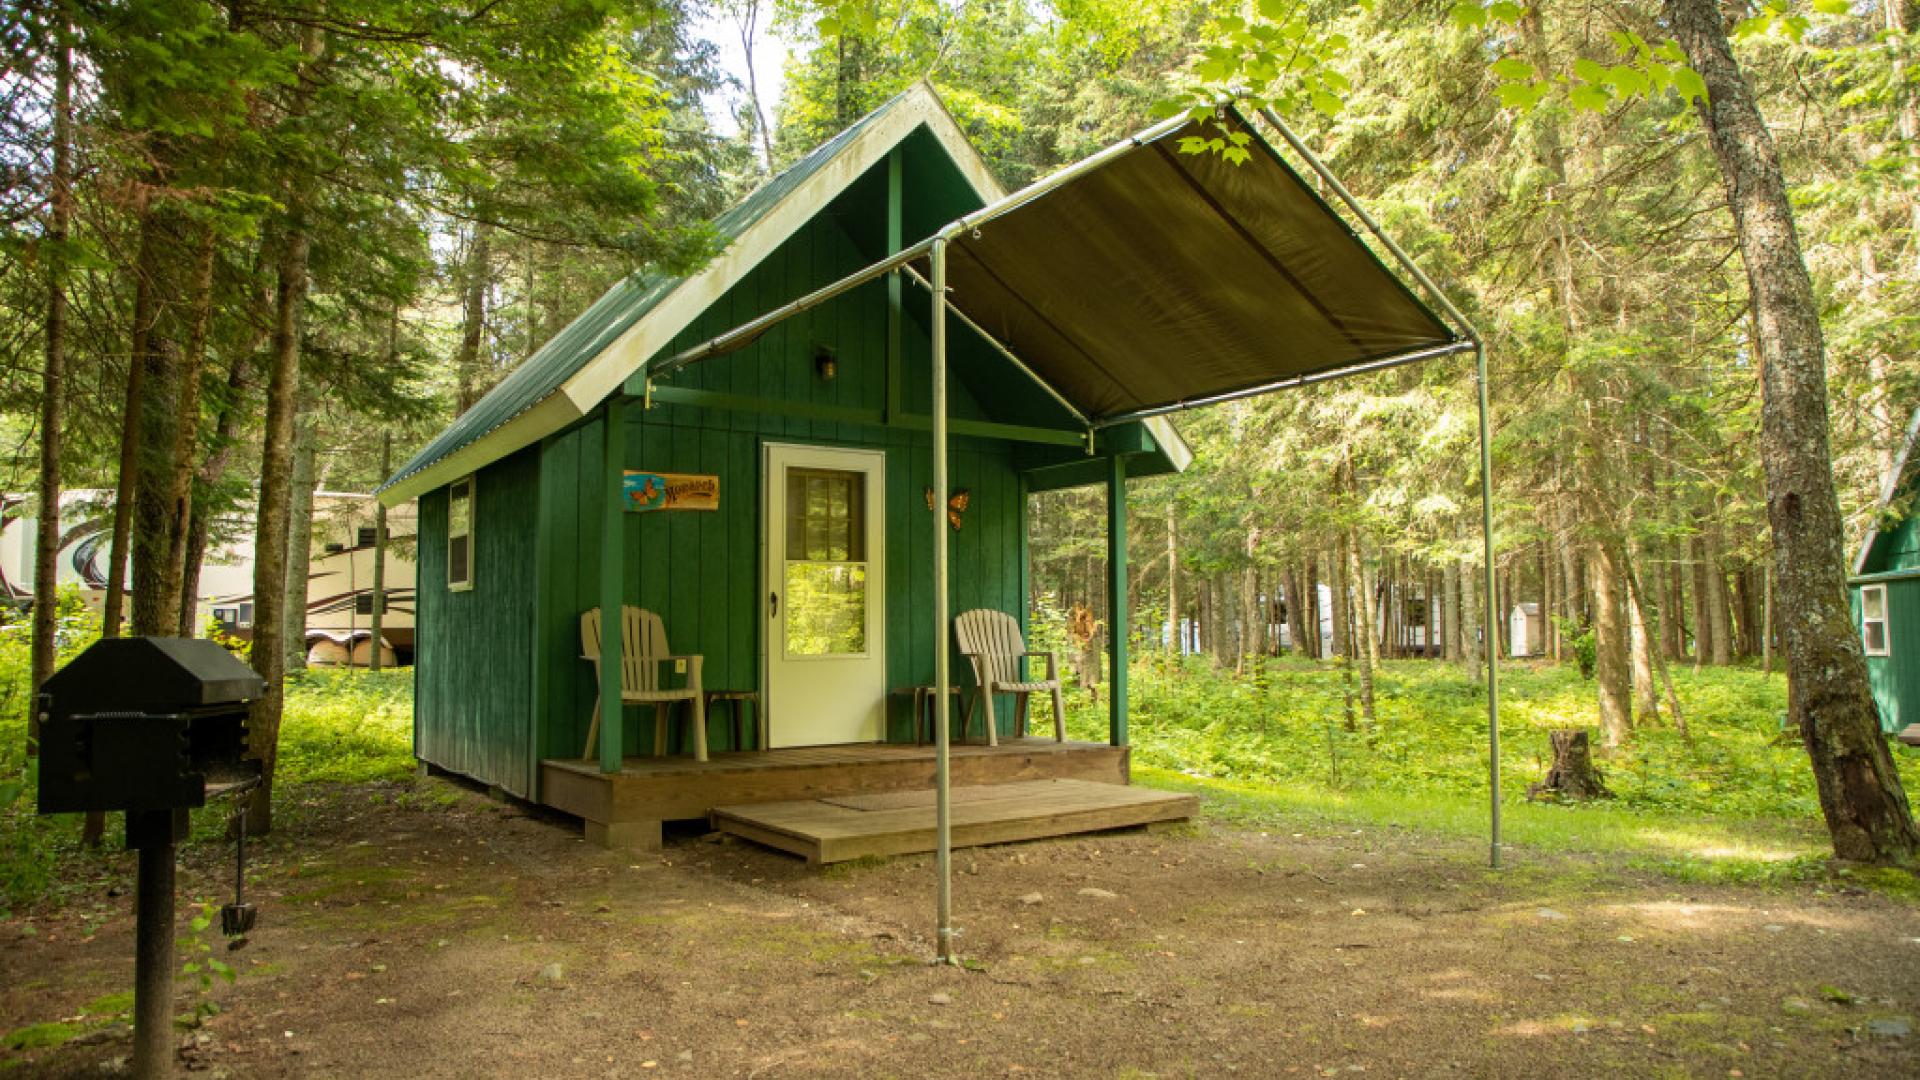 Deer River Campsite